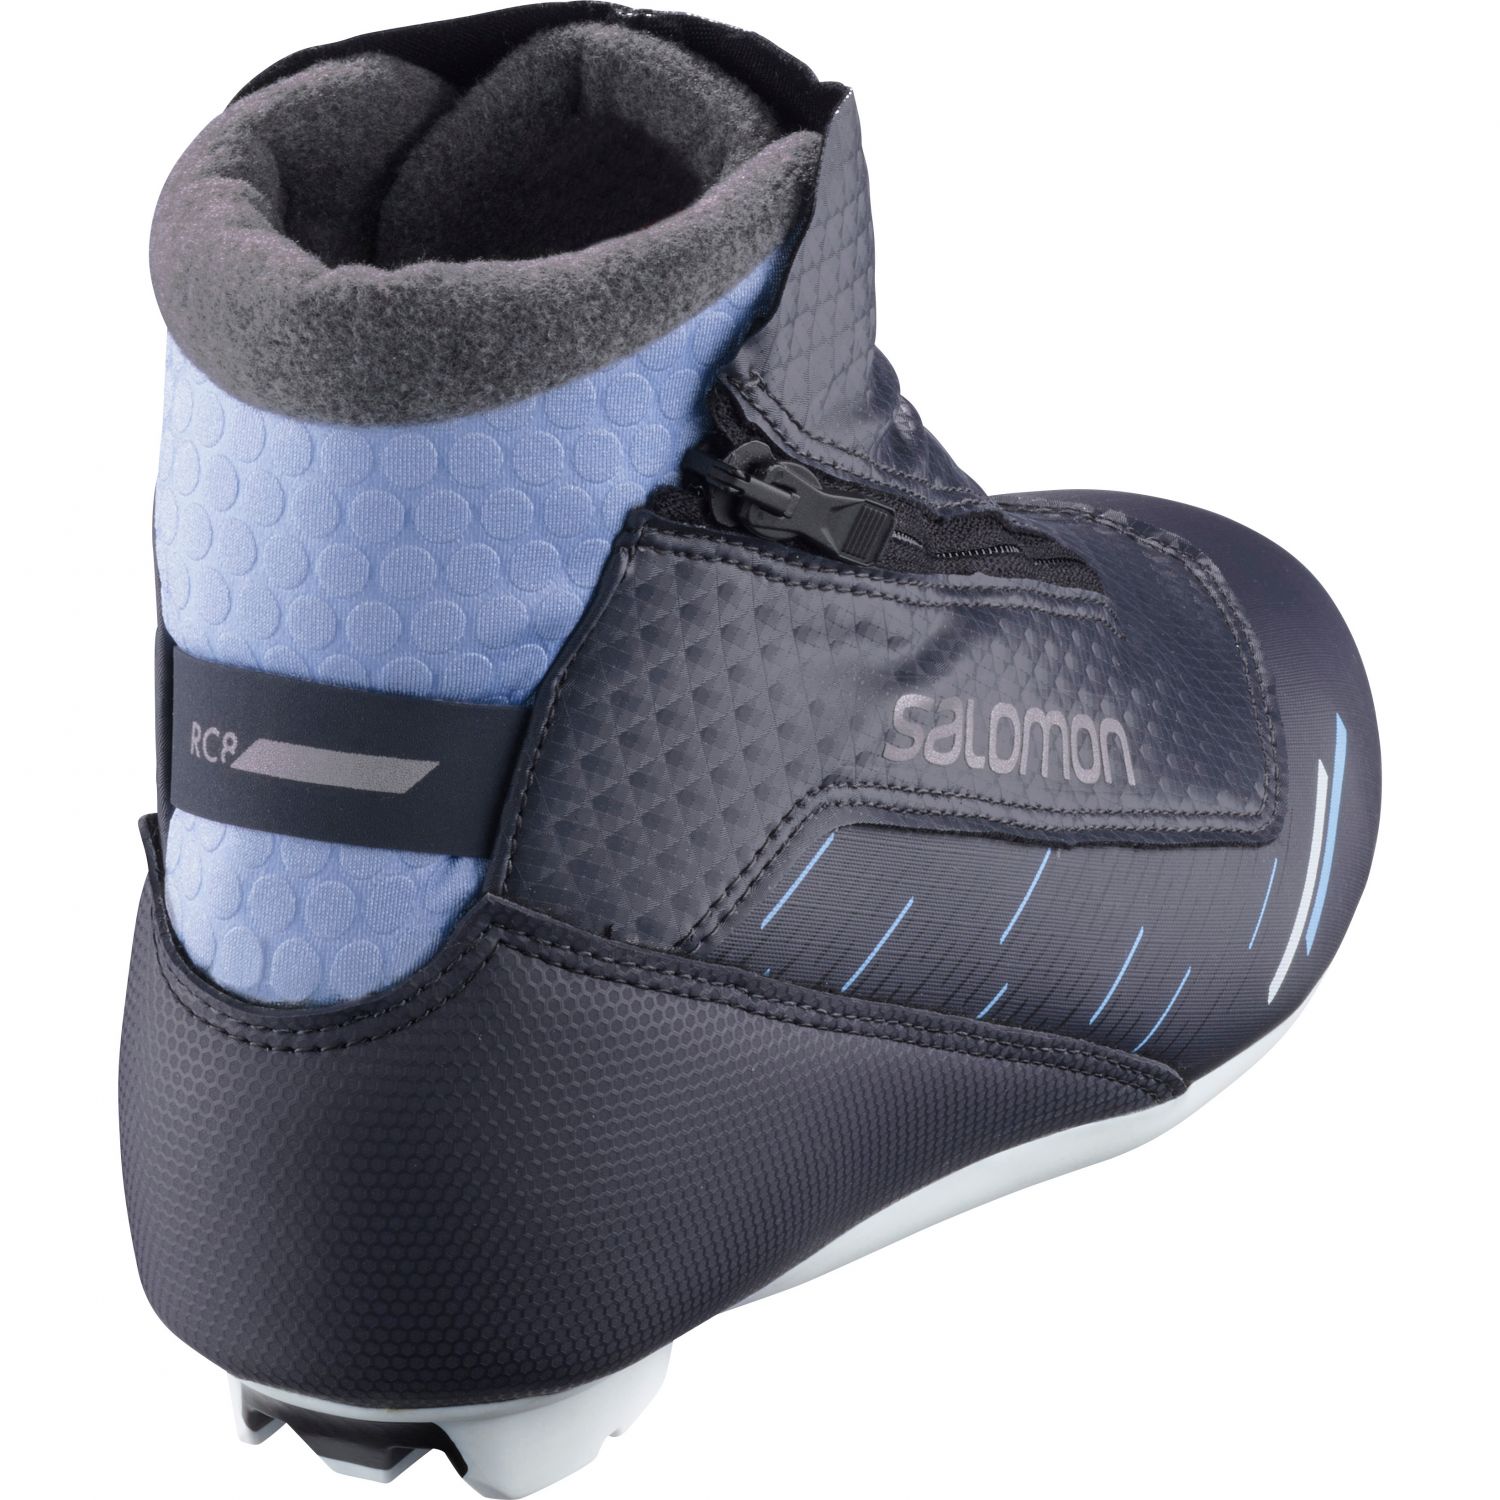 Salomon RC8 Vitane Nocturne Prolink, bottes de ski de fond, femmes, noir